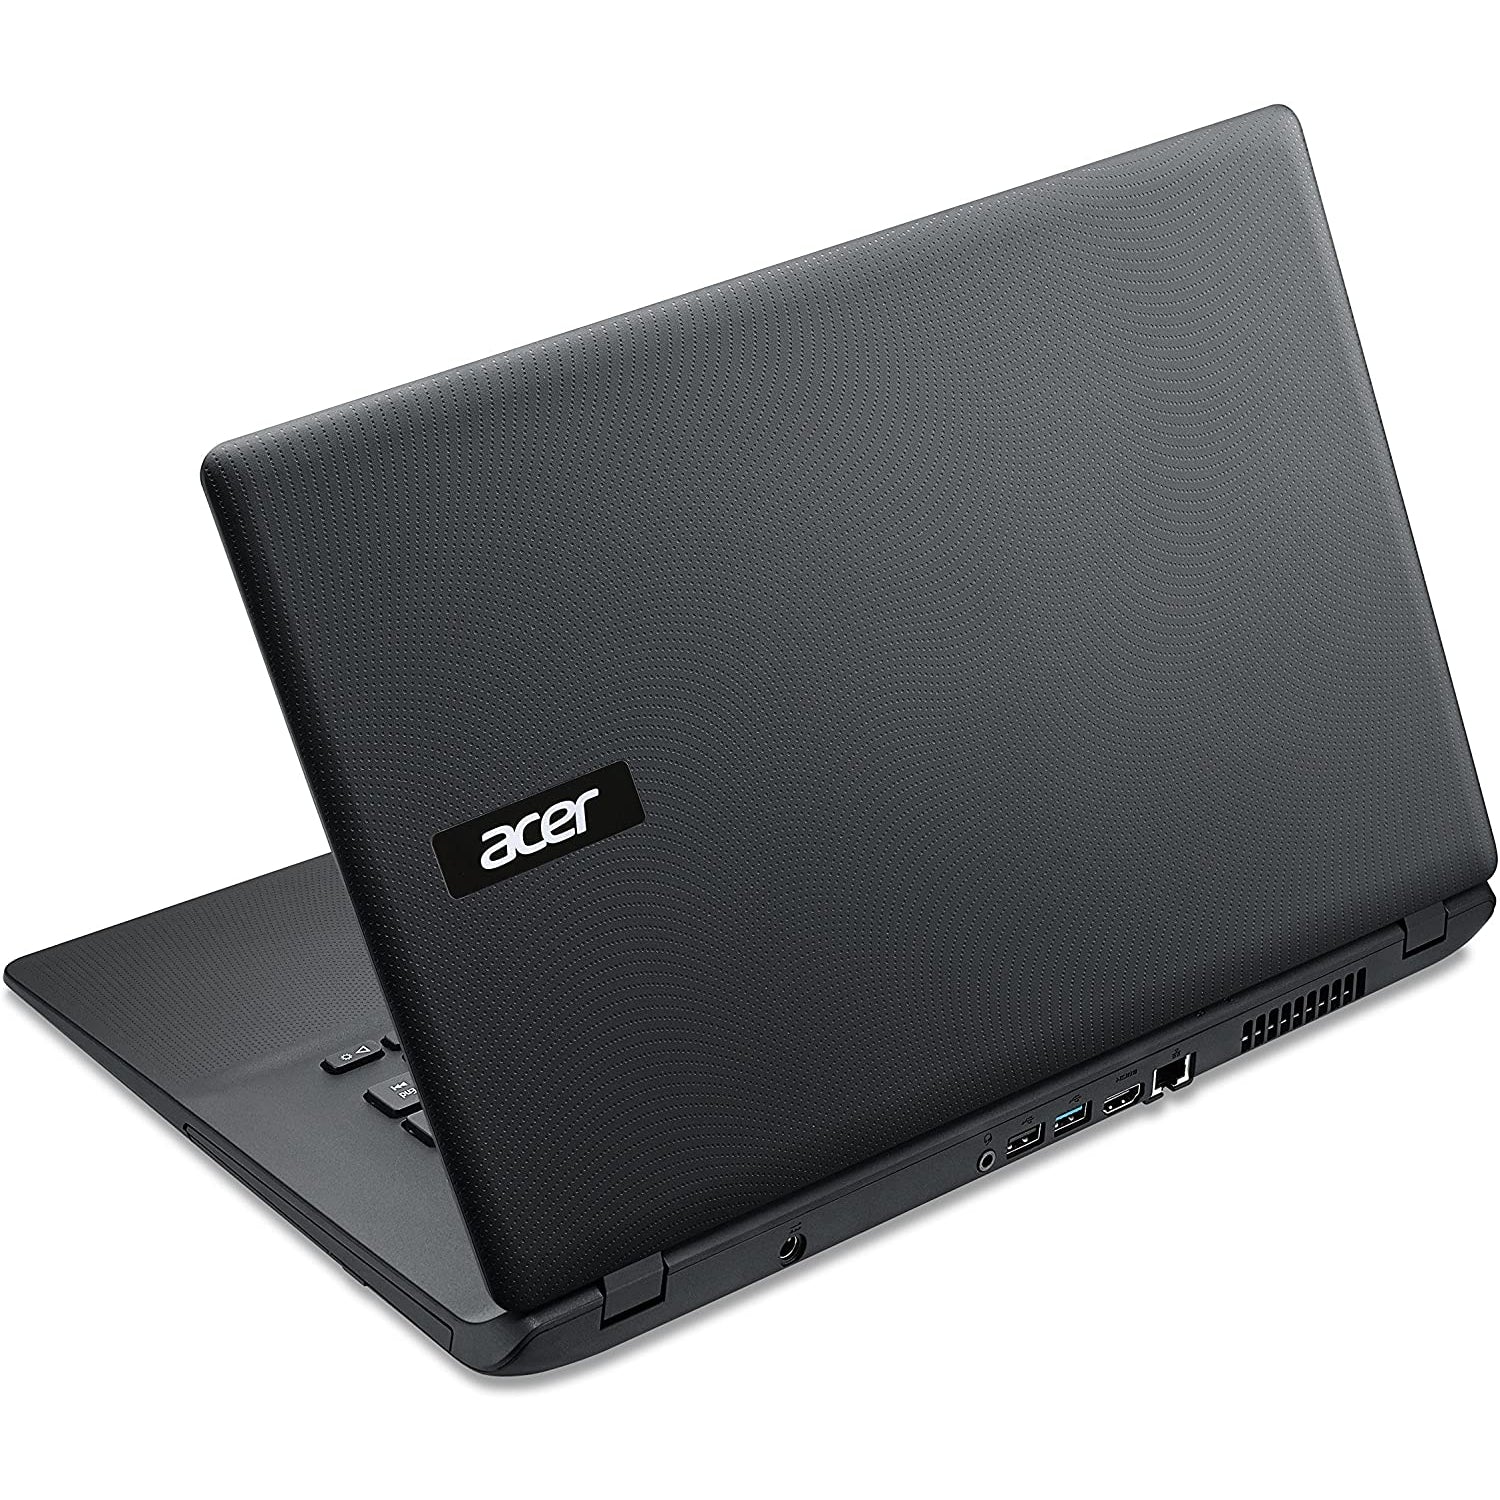 Acer Aspire ES1-521 - AMD A8-6410, 8GB RAM, 1TB HDD, 15.6" - Black